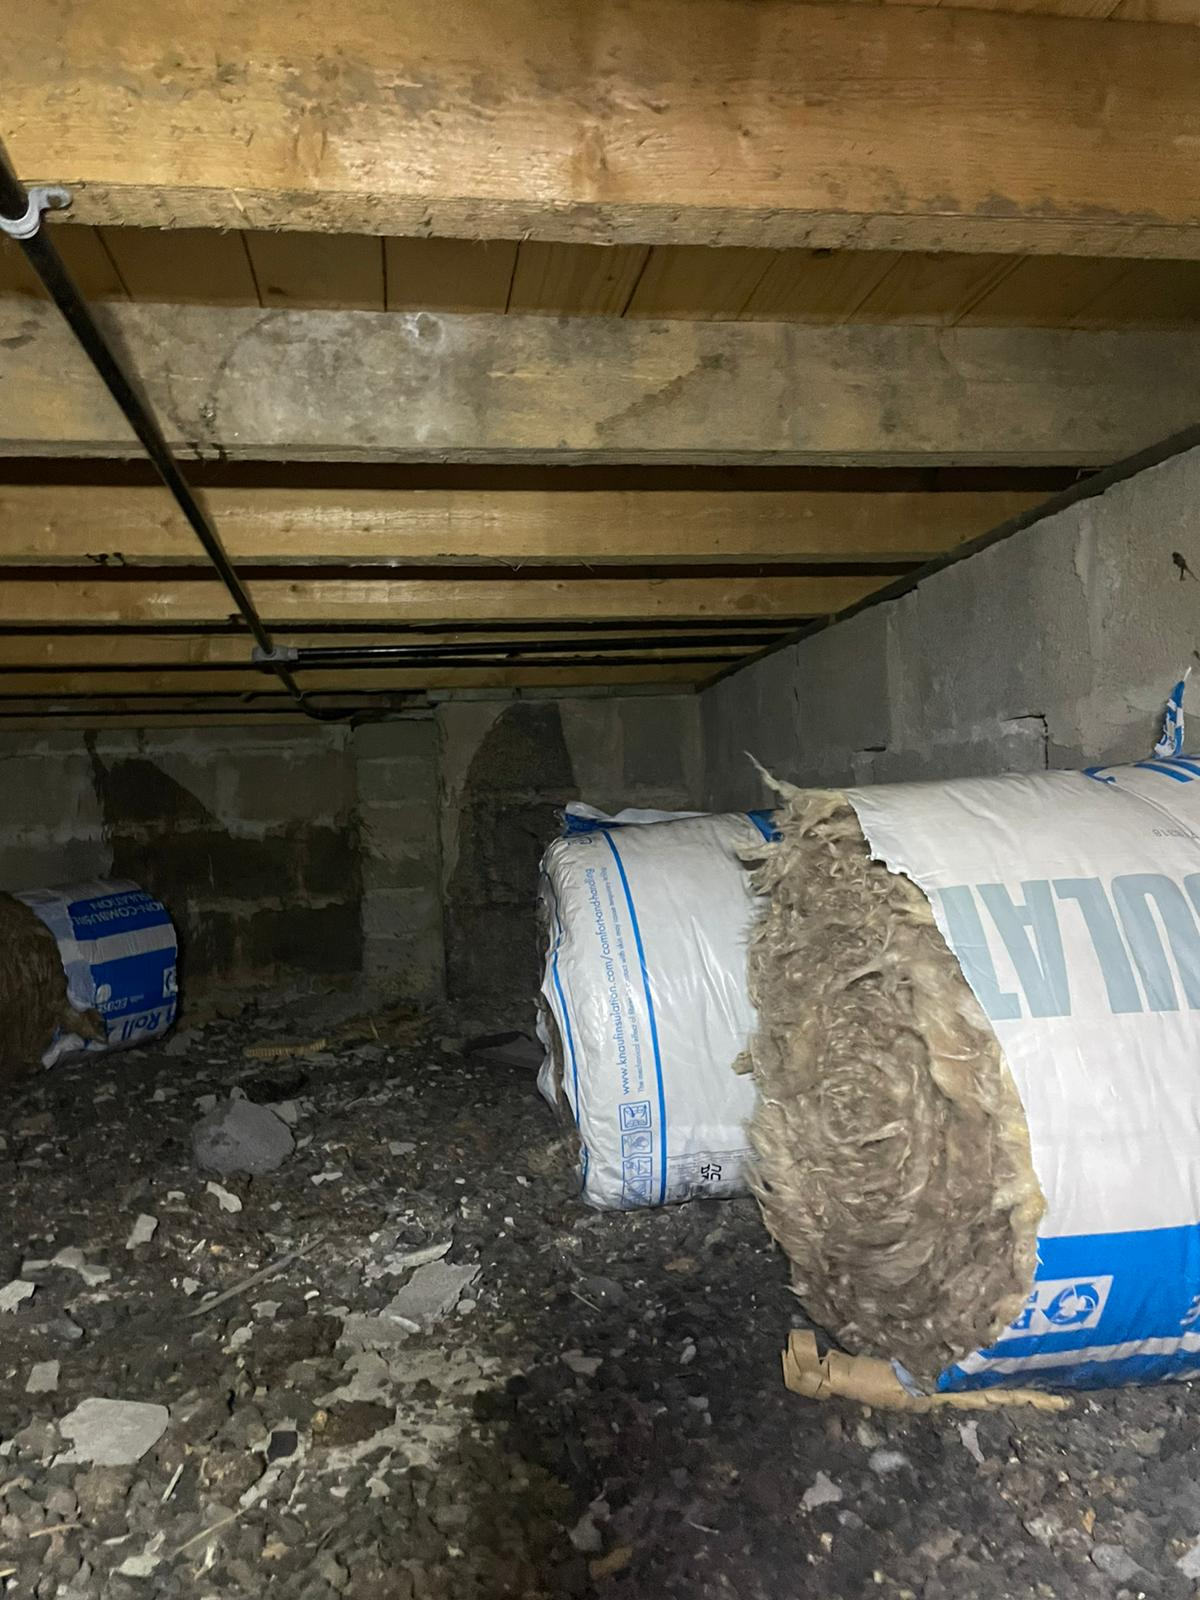 Underfloor Insulation being installed